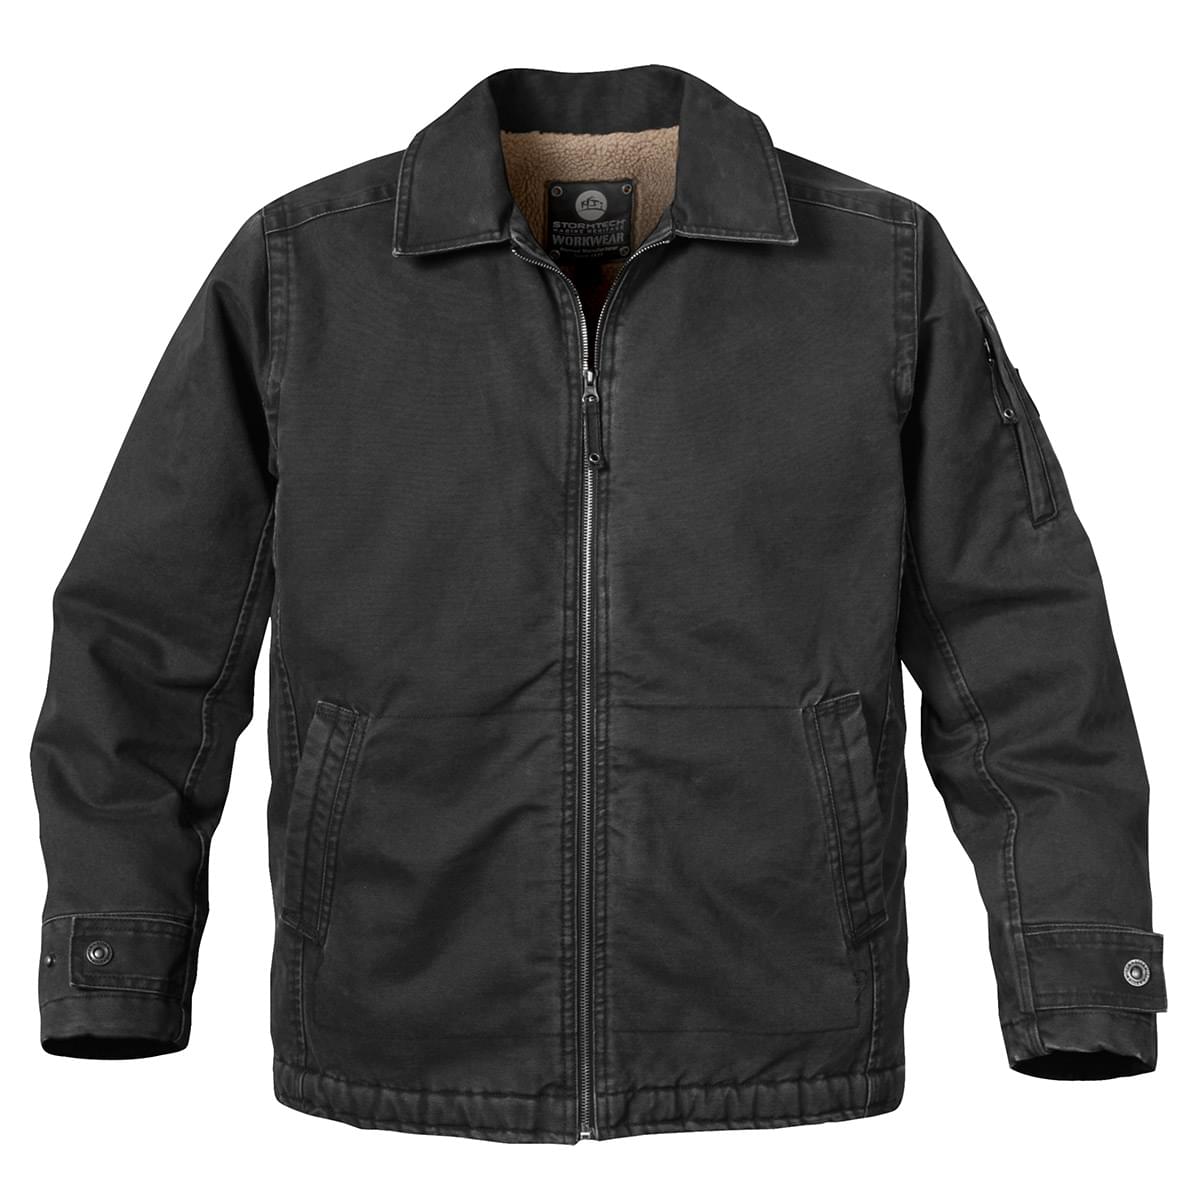 YYDGH Men's Plus Size Jackets-Windproof Bomber Jacket Full Zip Winter Warm  Padded Coats Outwear(Black,XXL) 